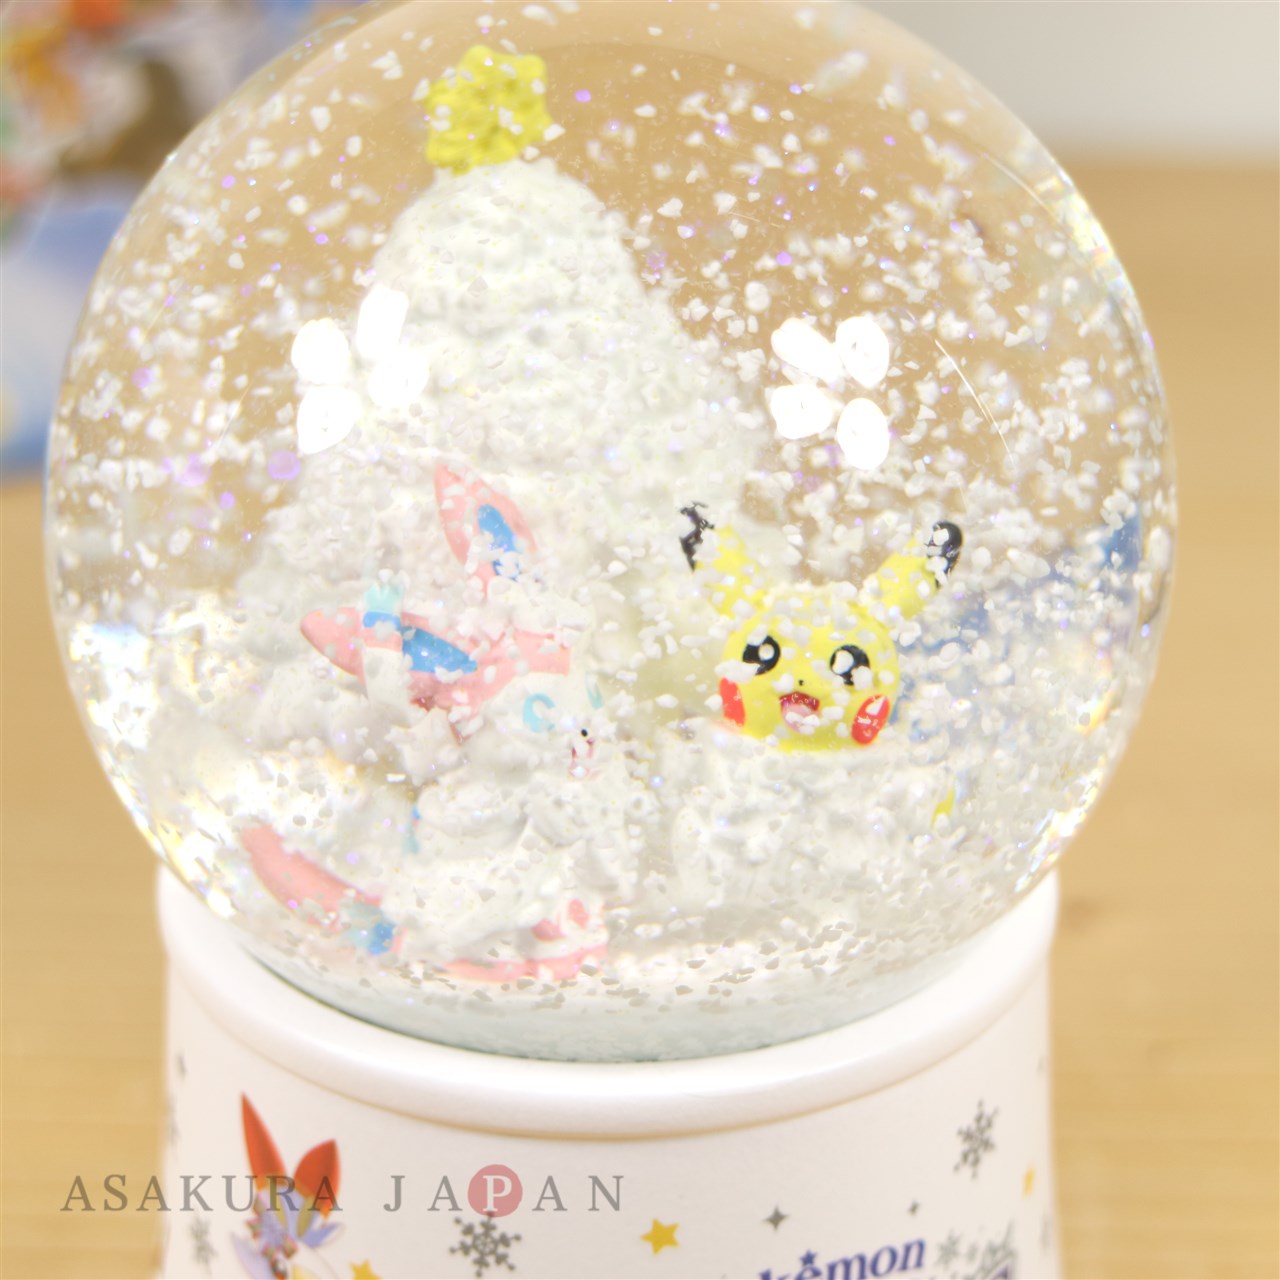 Pokemon Snow Globe Pok?mon Frosty Christmas 2019 Pikachu Sylveon